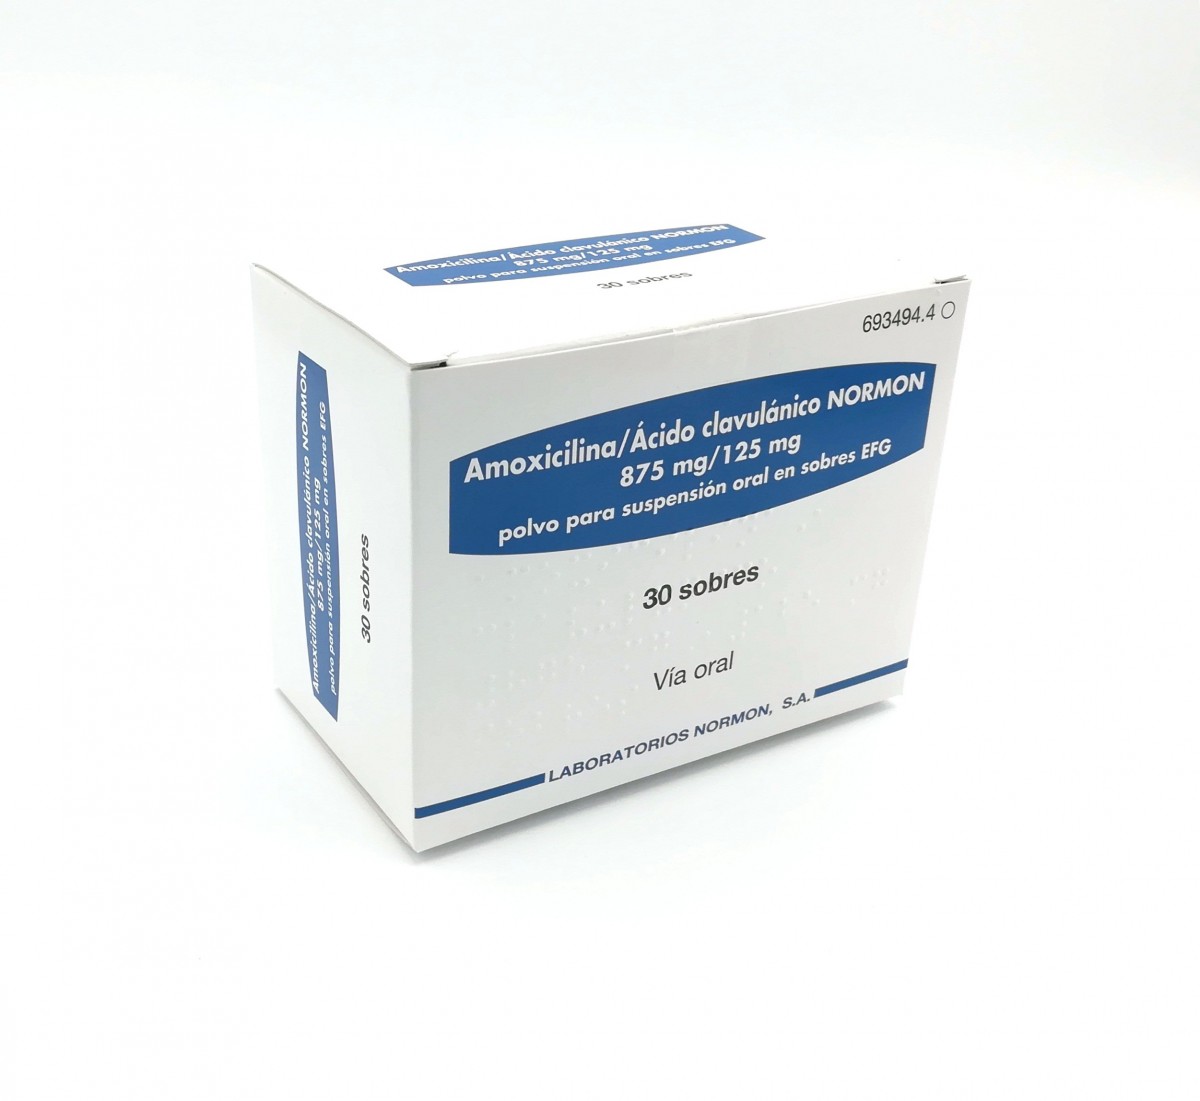 AMOXICILINA/ACIDO CLAVULANICO NORMON 875 mg/125 mg POLVO PARA SUSPENSION ORAL EN SOBRES EFG , 12 sobres fotografía del envase.